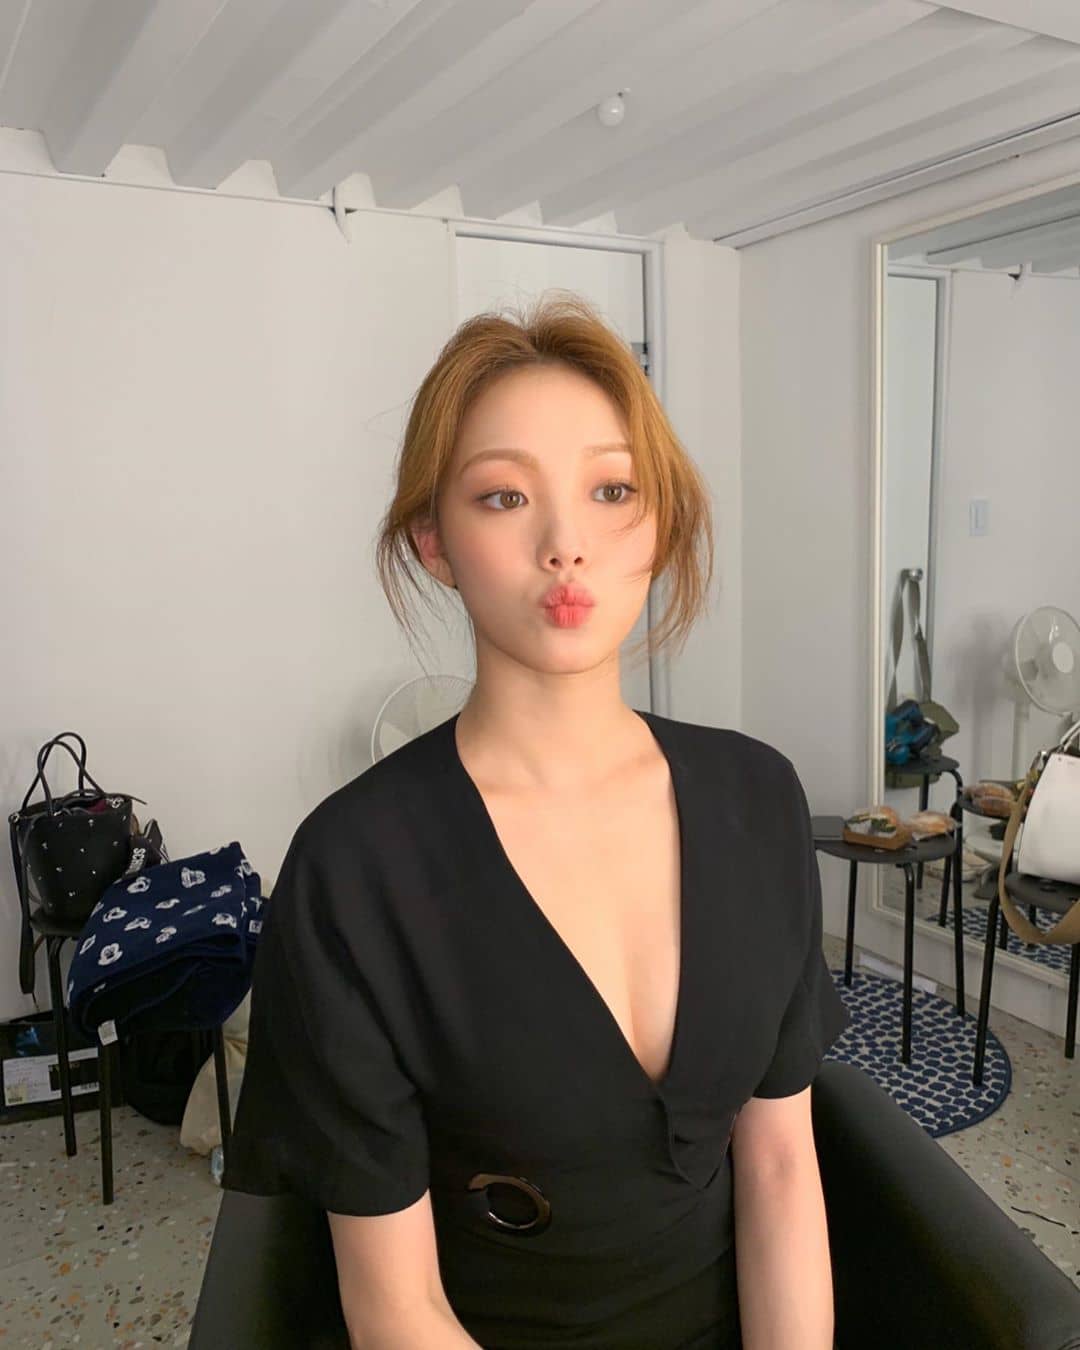 Ini Dia 10 Tren Make Up ala Drama Korea yang Membuatmu Terlihat Cantik Natural